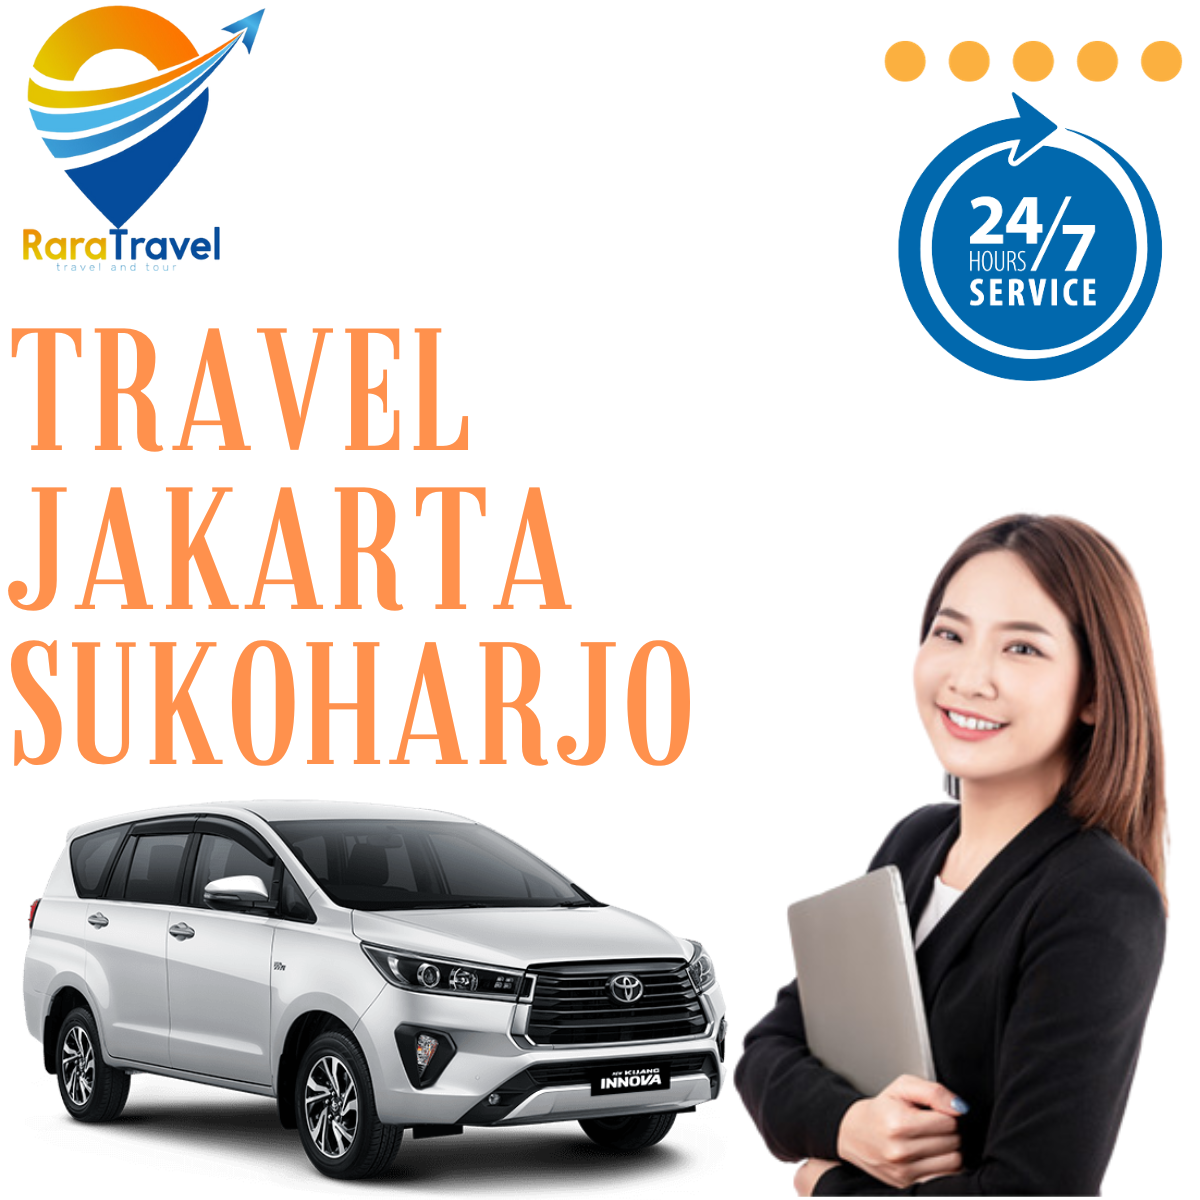 Travel Jakarta Sukoharjo PP Hiace via TOLL Harga Tiket Murah Layanan CS 24 Jam